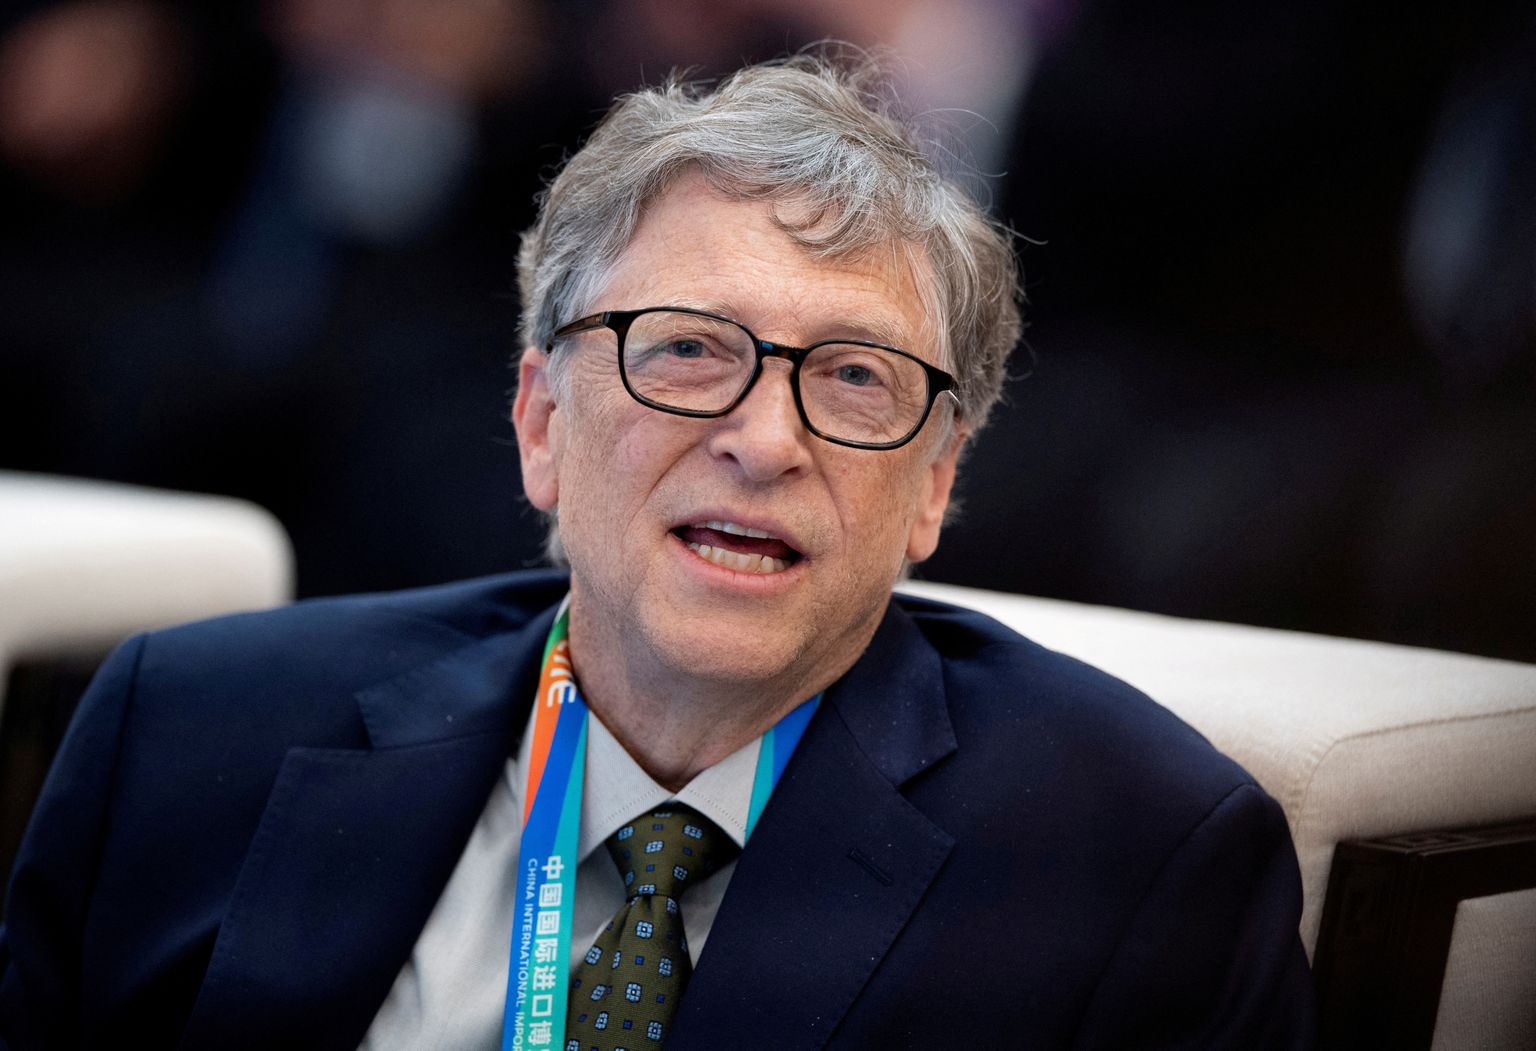 Microsofti kaasasutaja Bill Gates on osaline uue tuumareaktori arendamises, mille kütuse osas loodeti koostööle Venemaaga. Nüüd on neil plaanidel kriips peal.